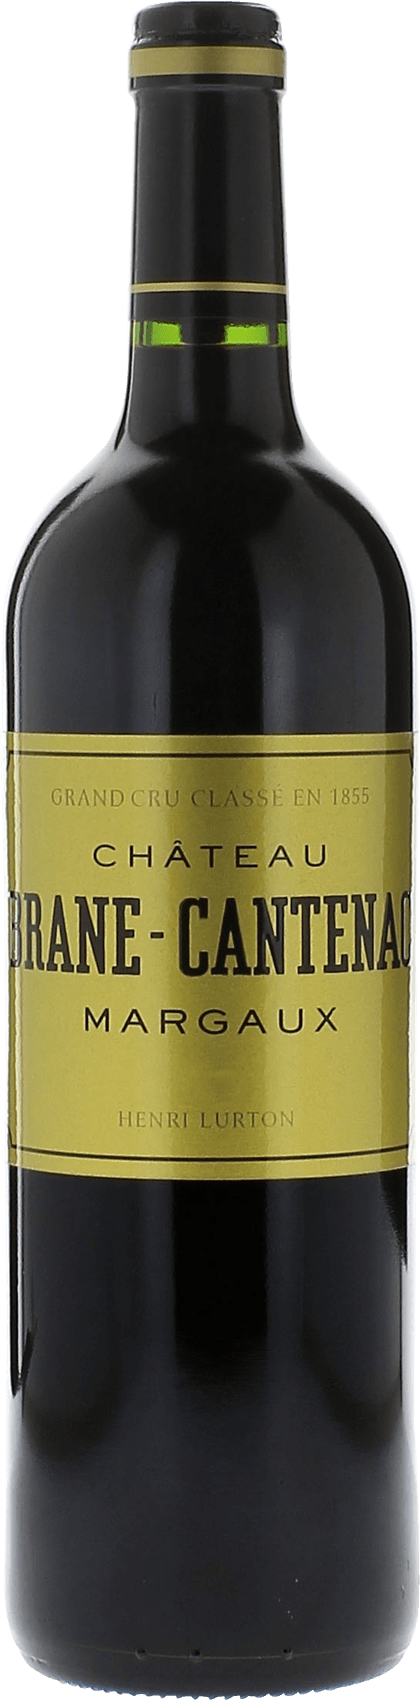 Brane cantenac 2005 2me Grand cru class Margaux, Bordeaux rouge